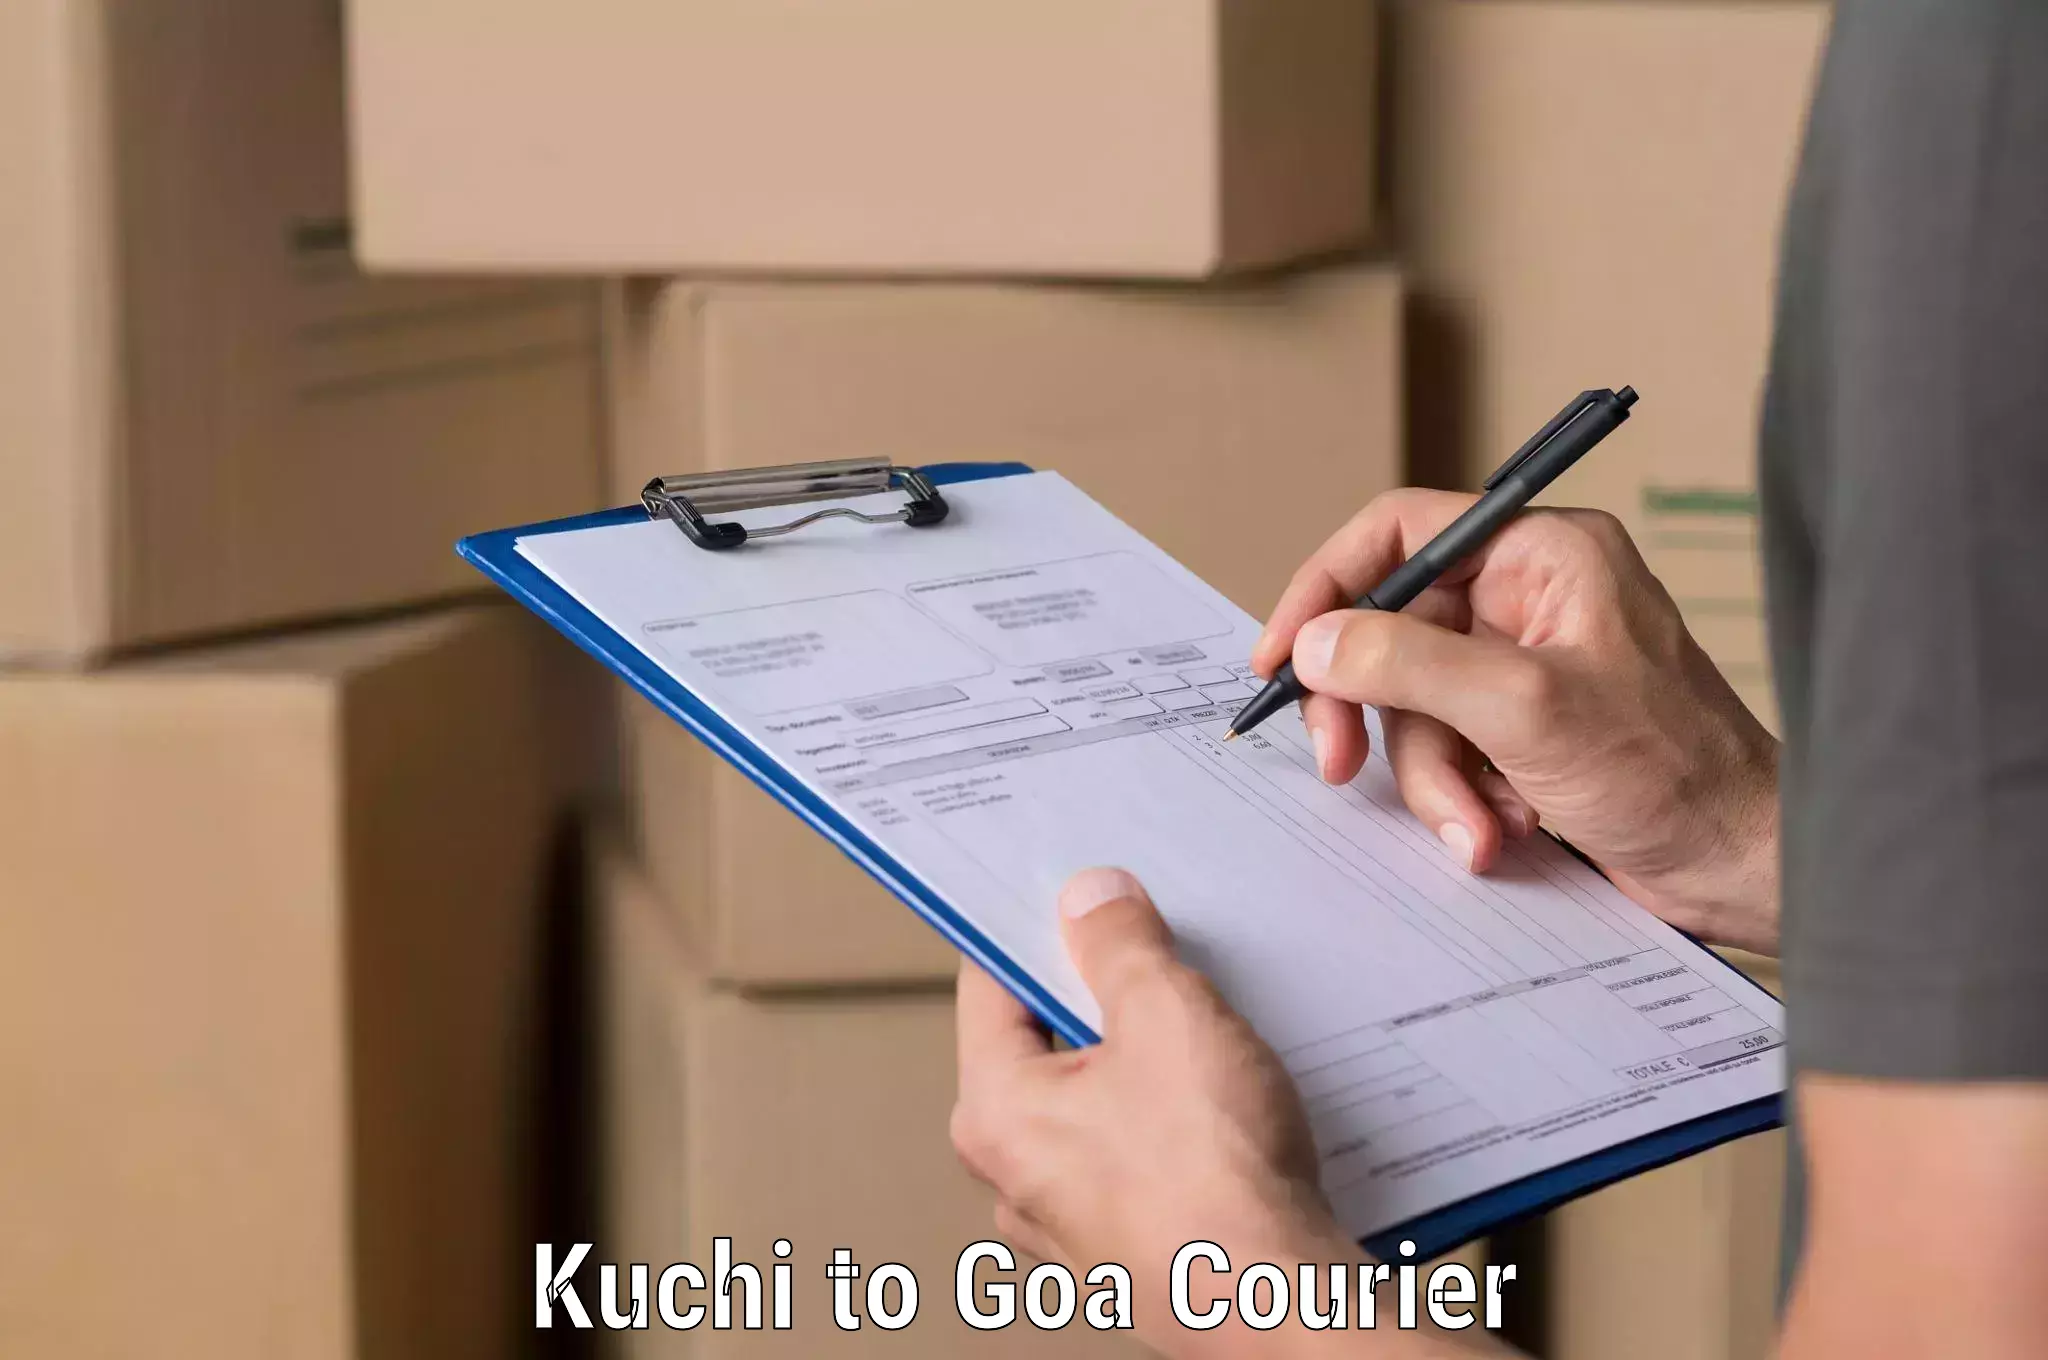 Optimized shipping routes in Kuchi to Canacona